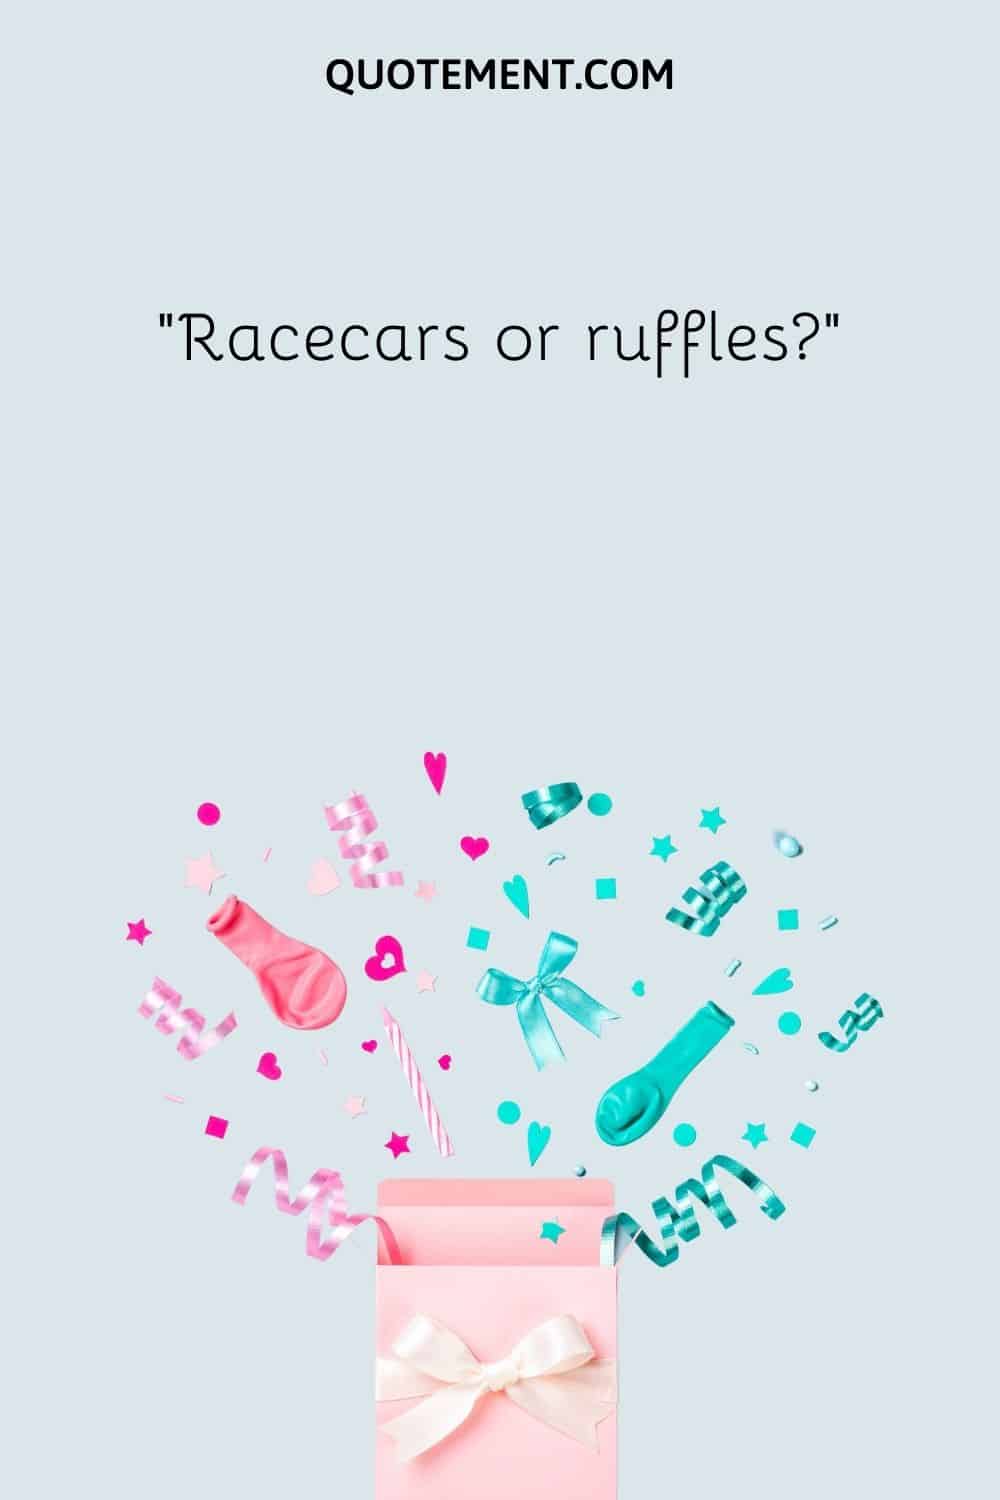 Racecars or ruffles